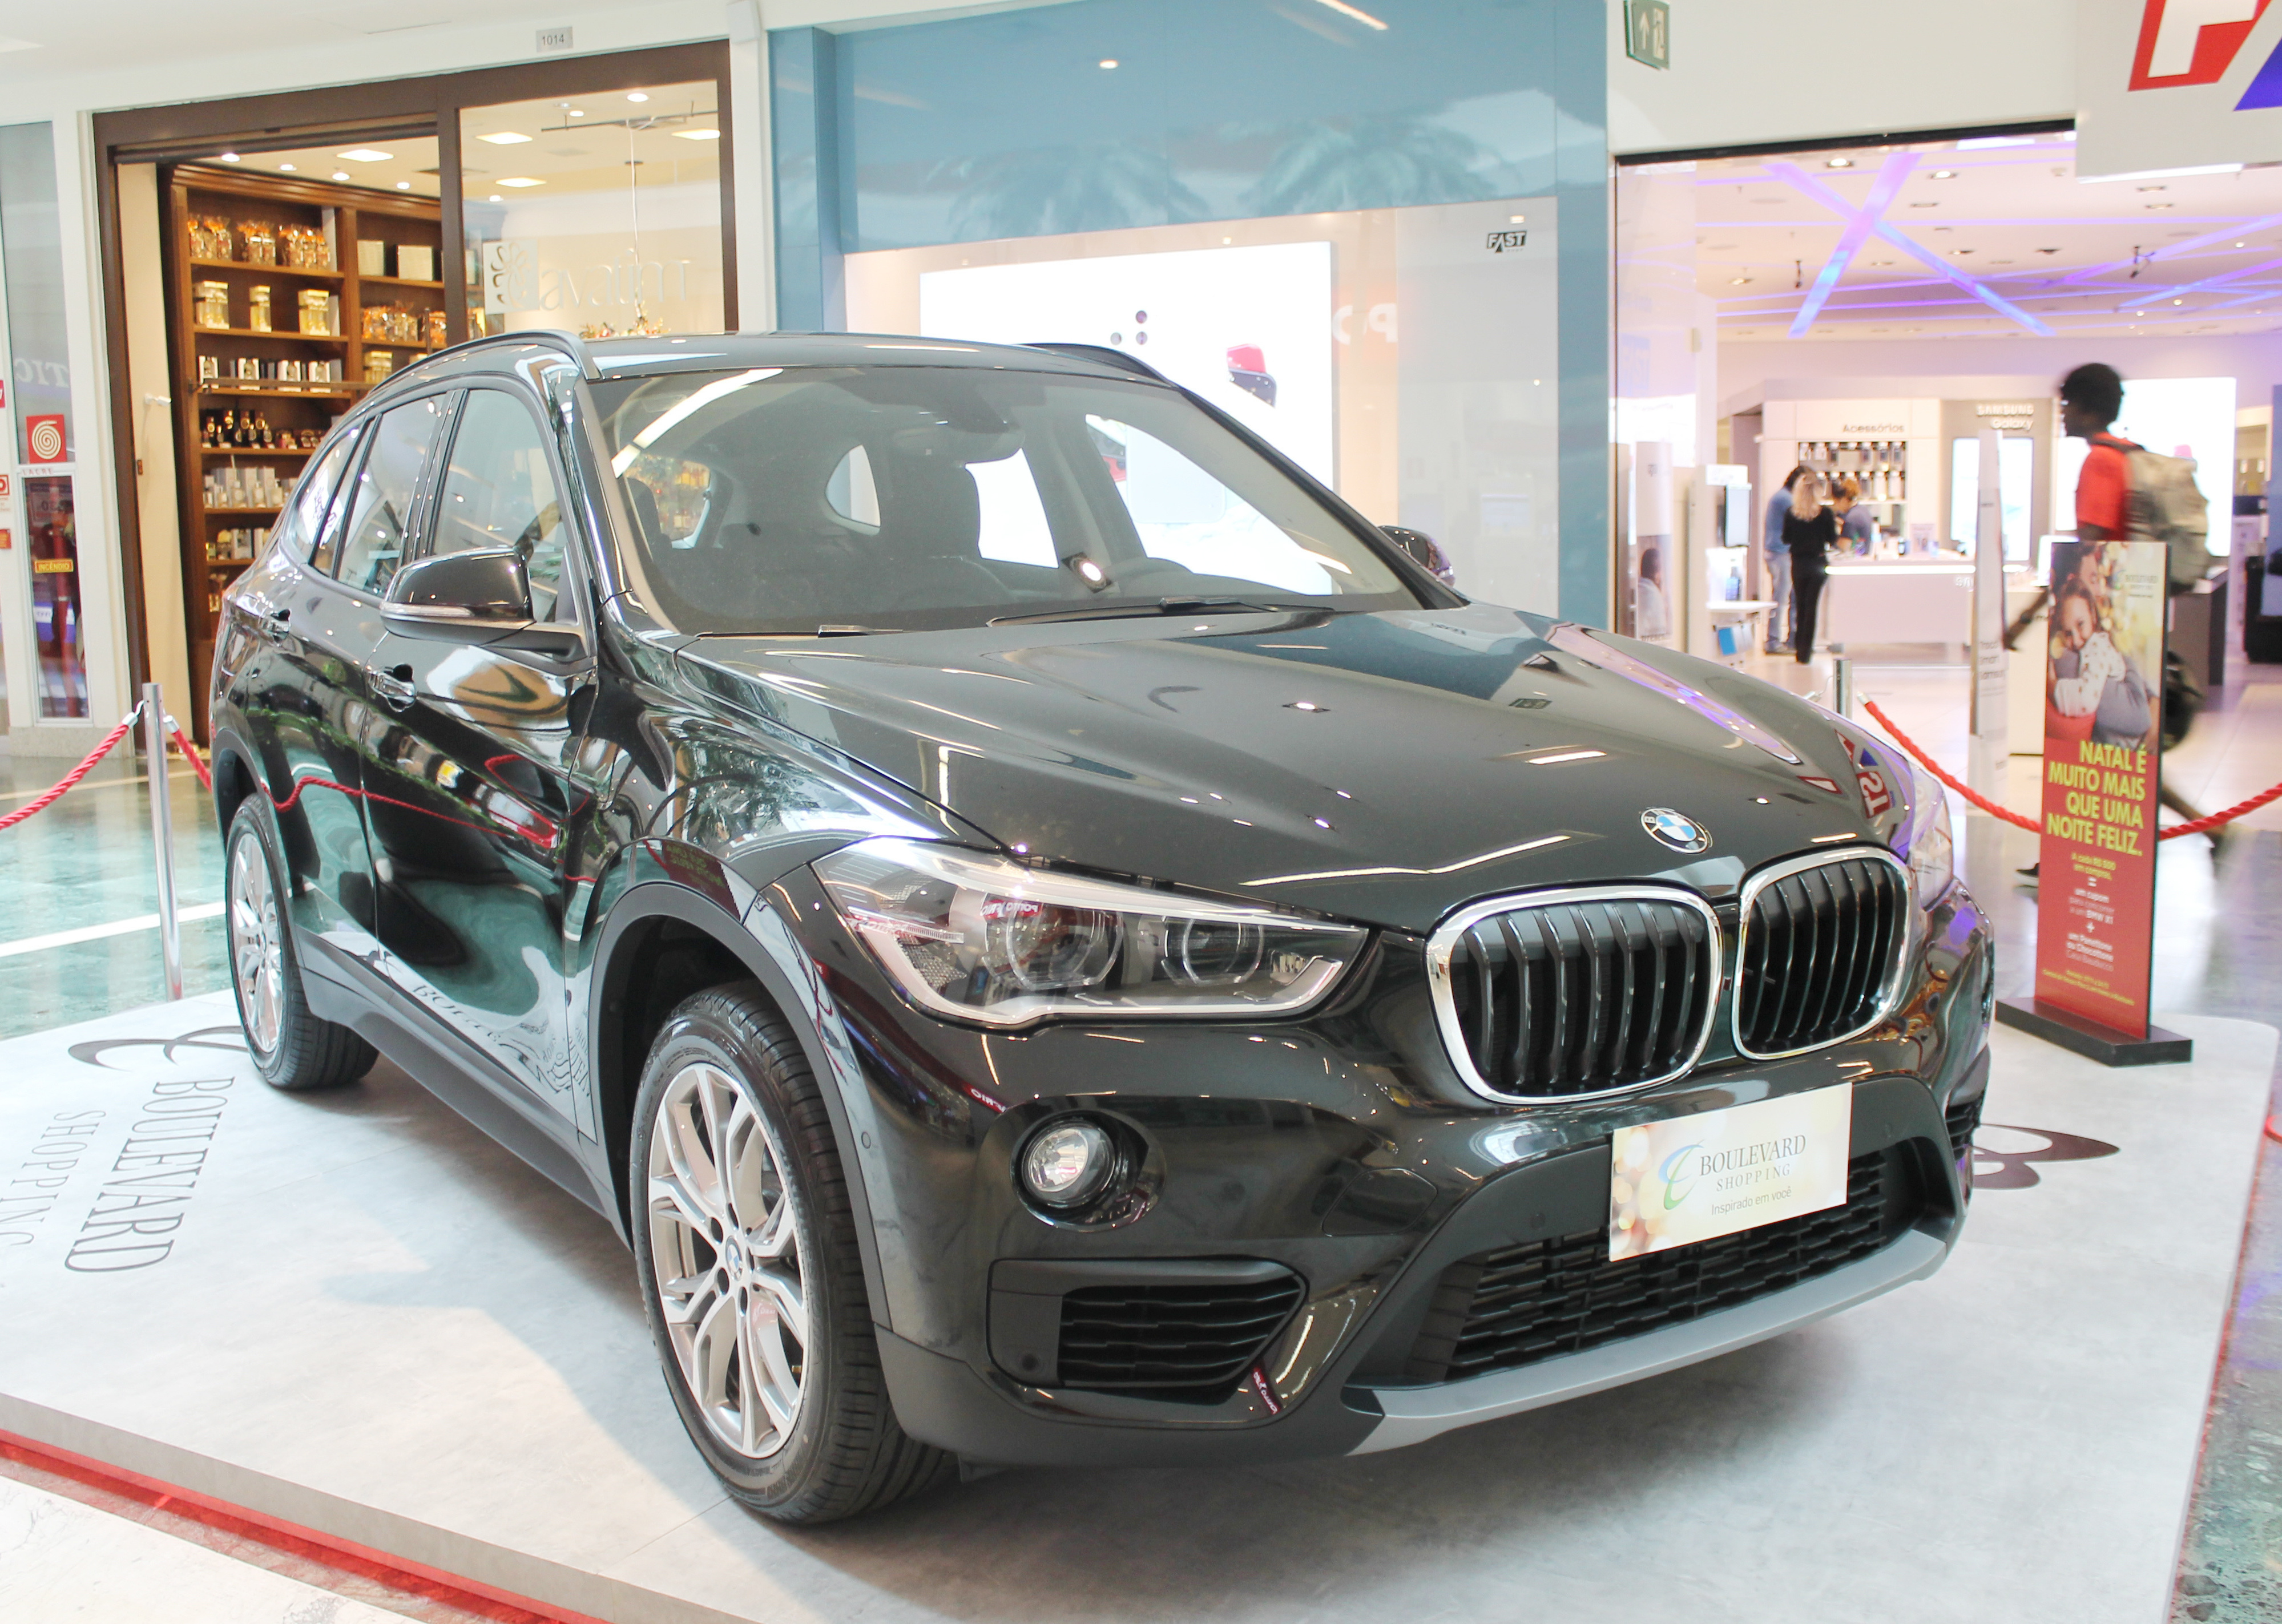 Campanha de Natal do Boulevard Shopping tem sorteio de um BMW X1 | Notícias  Sou BH